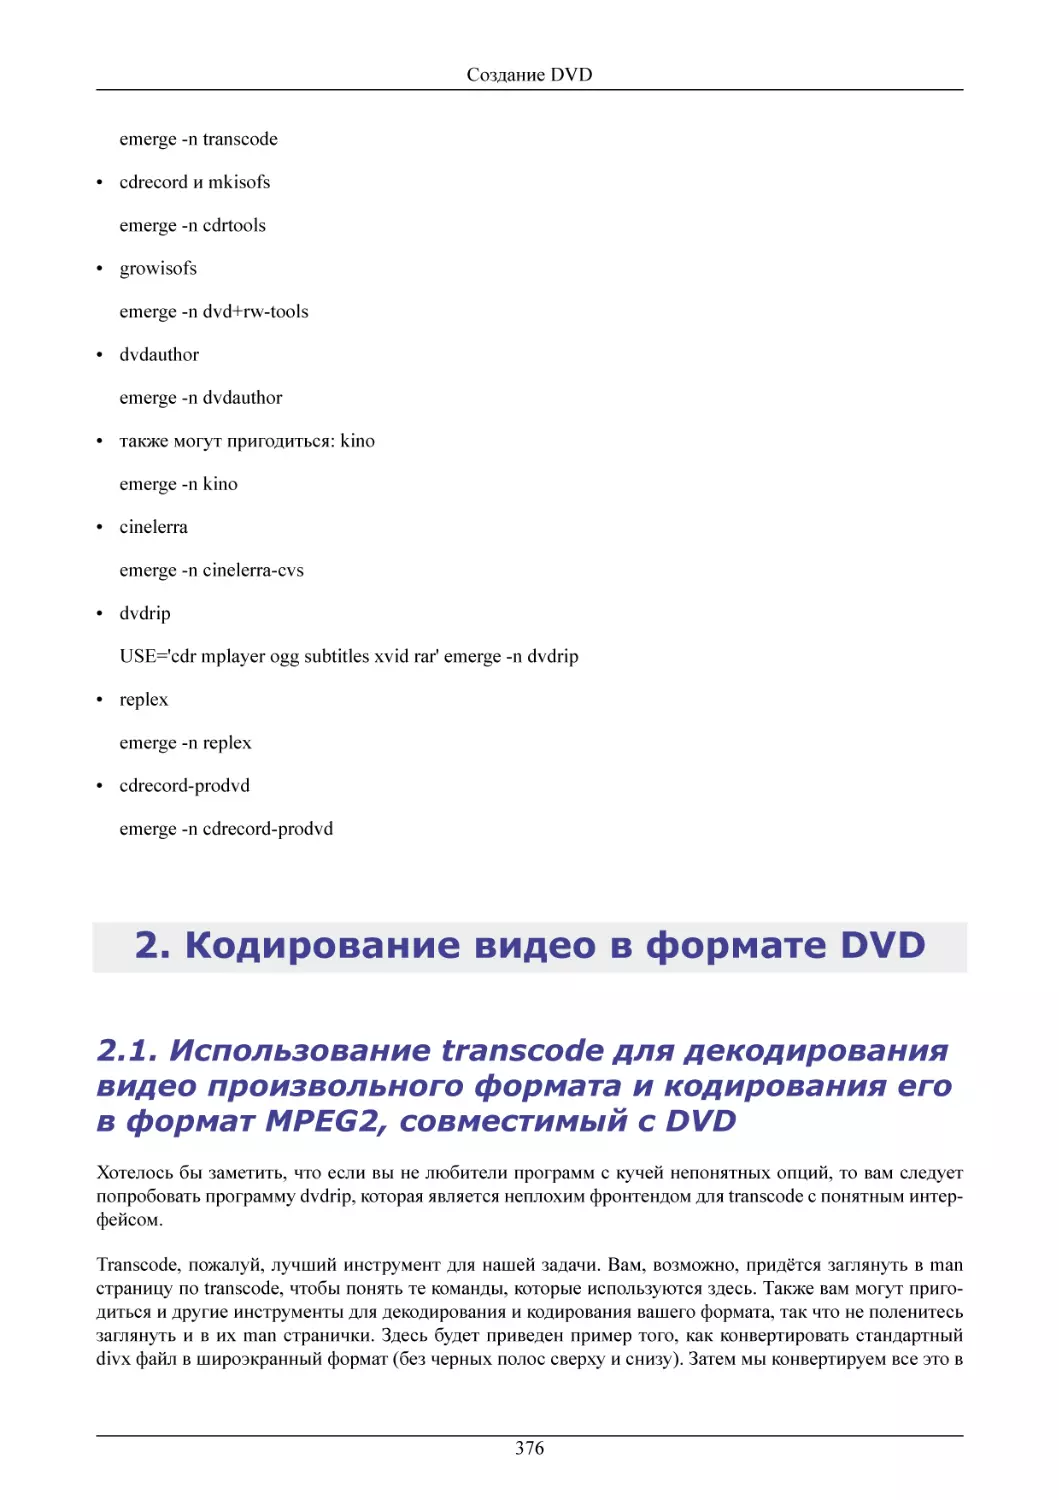 Кодирование видео в формате DVD
Использование transcode для декодирования видео